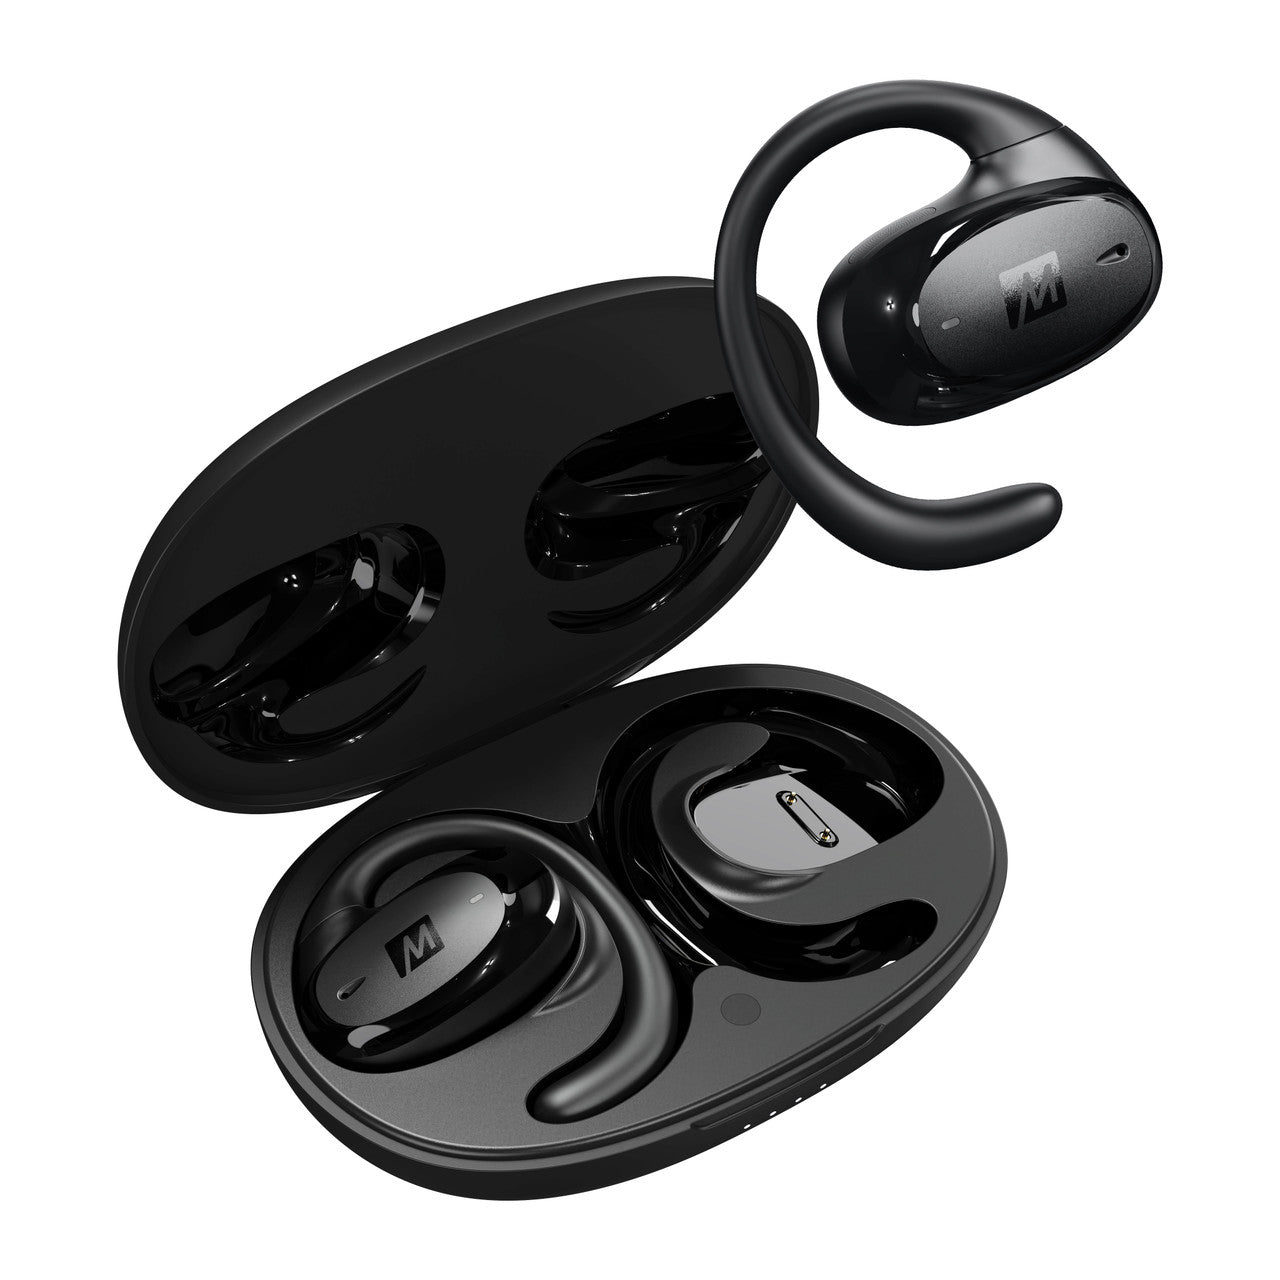 Image of AirHooks Pro Open Ear Truly Wireless Sports Headphones.